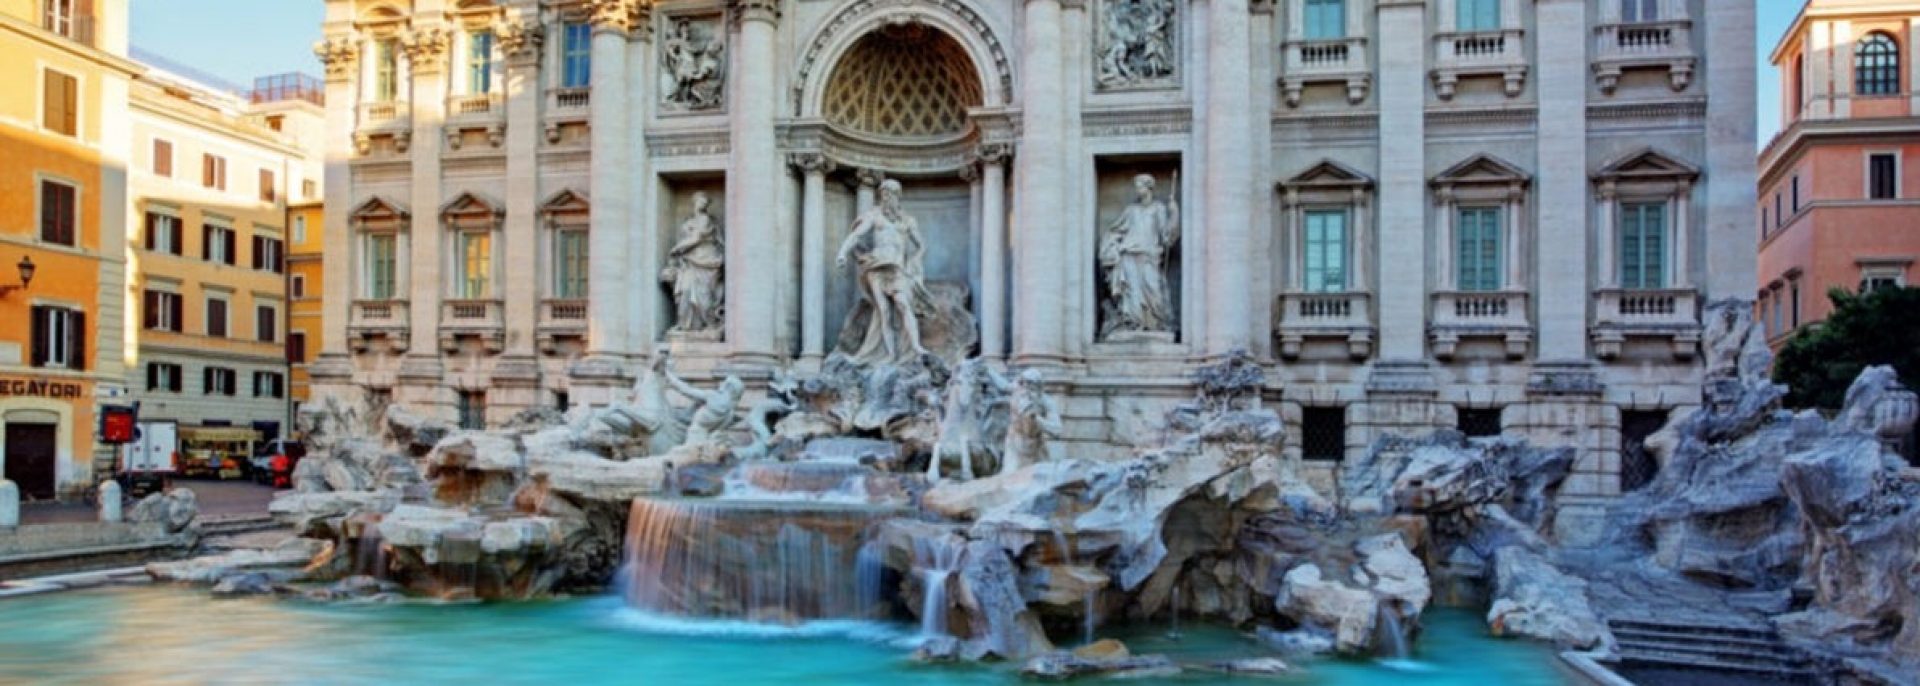 Trevi fountain Rome Italia